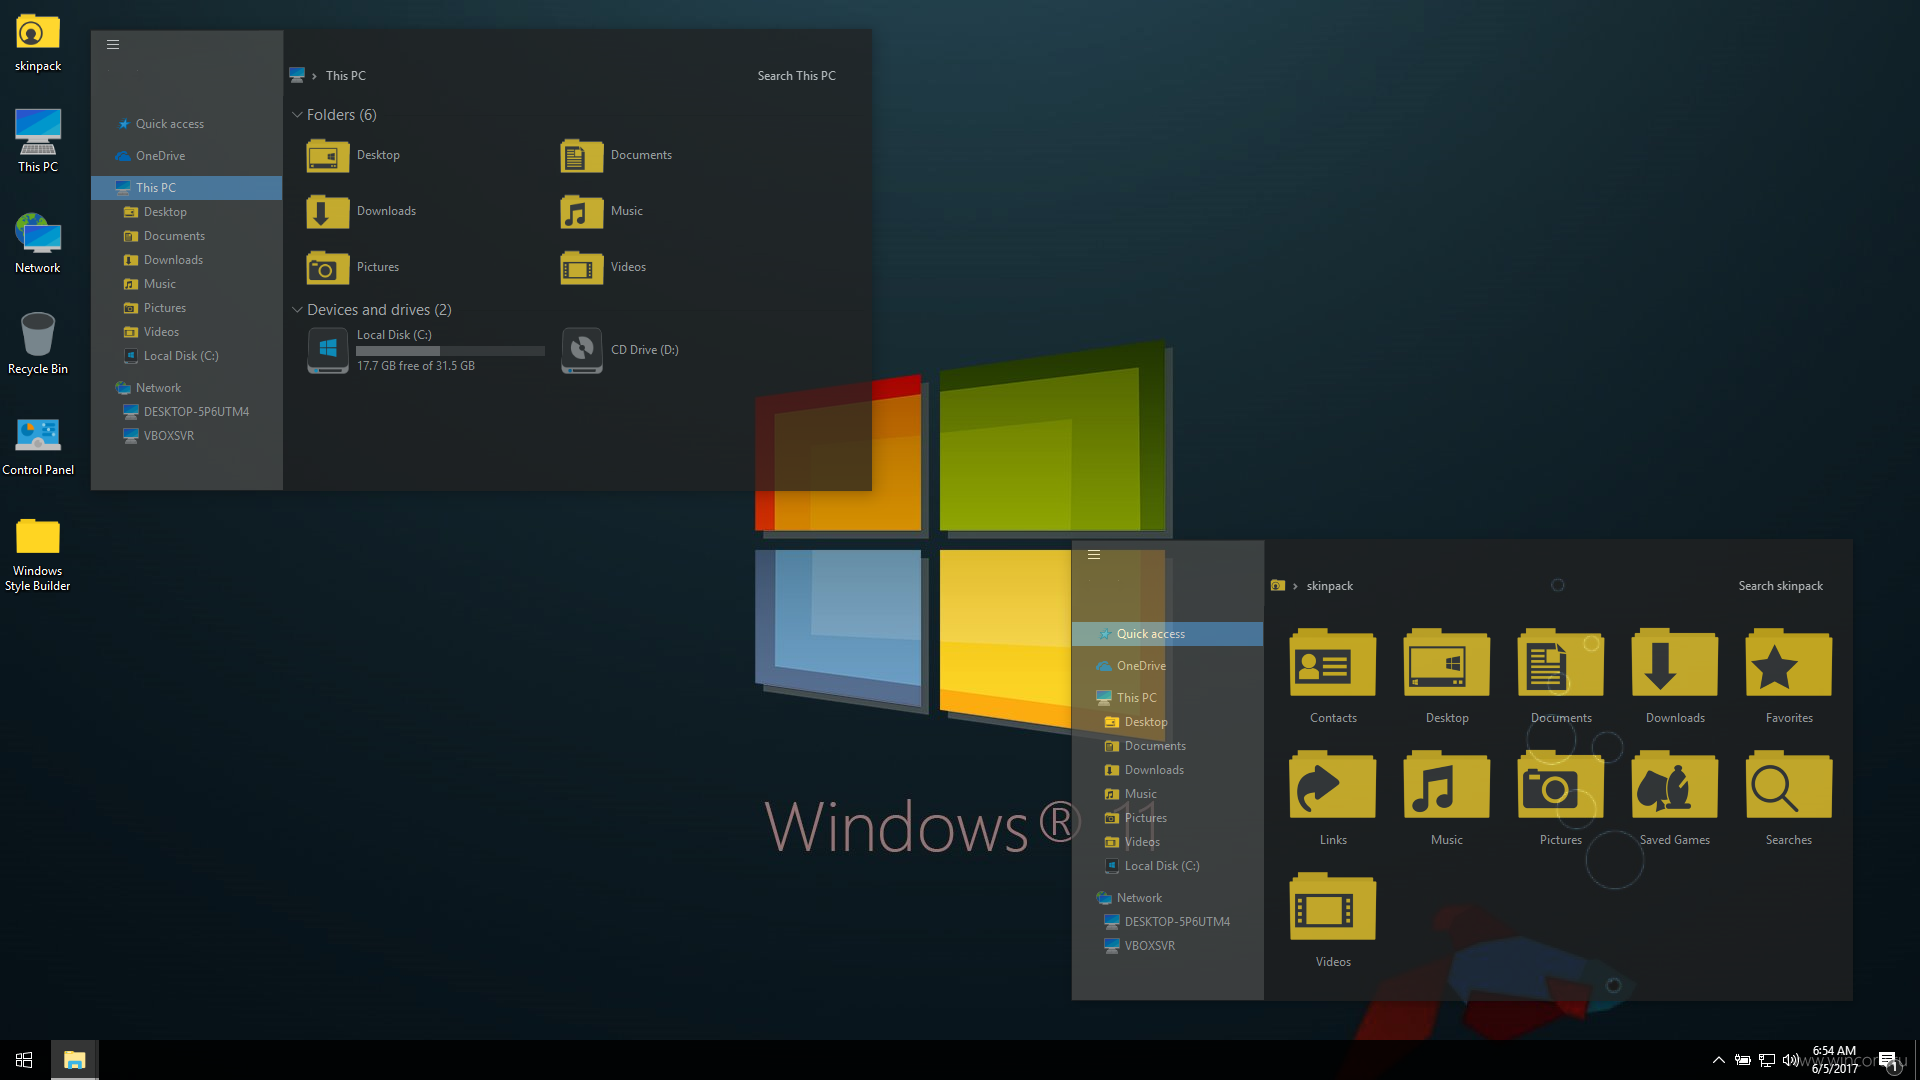 Скачать образ windows 10 iso с сайта майкрософт / 4 варианта